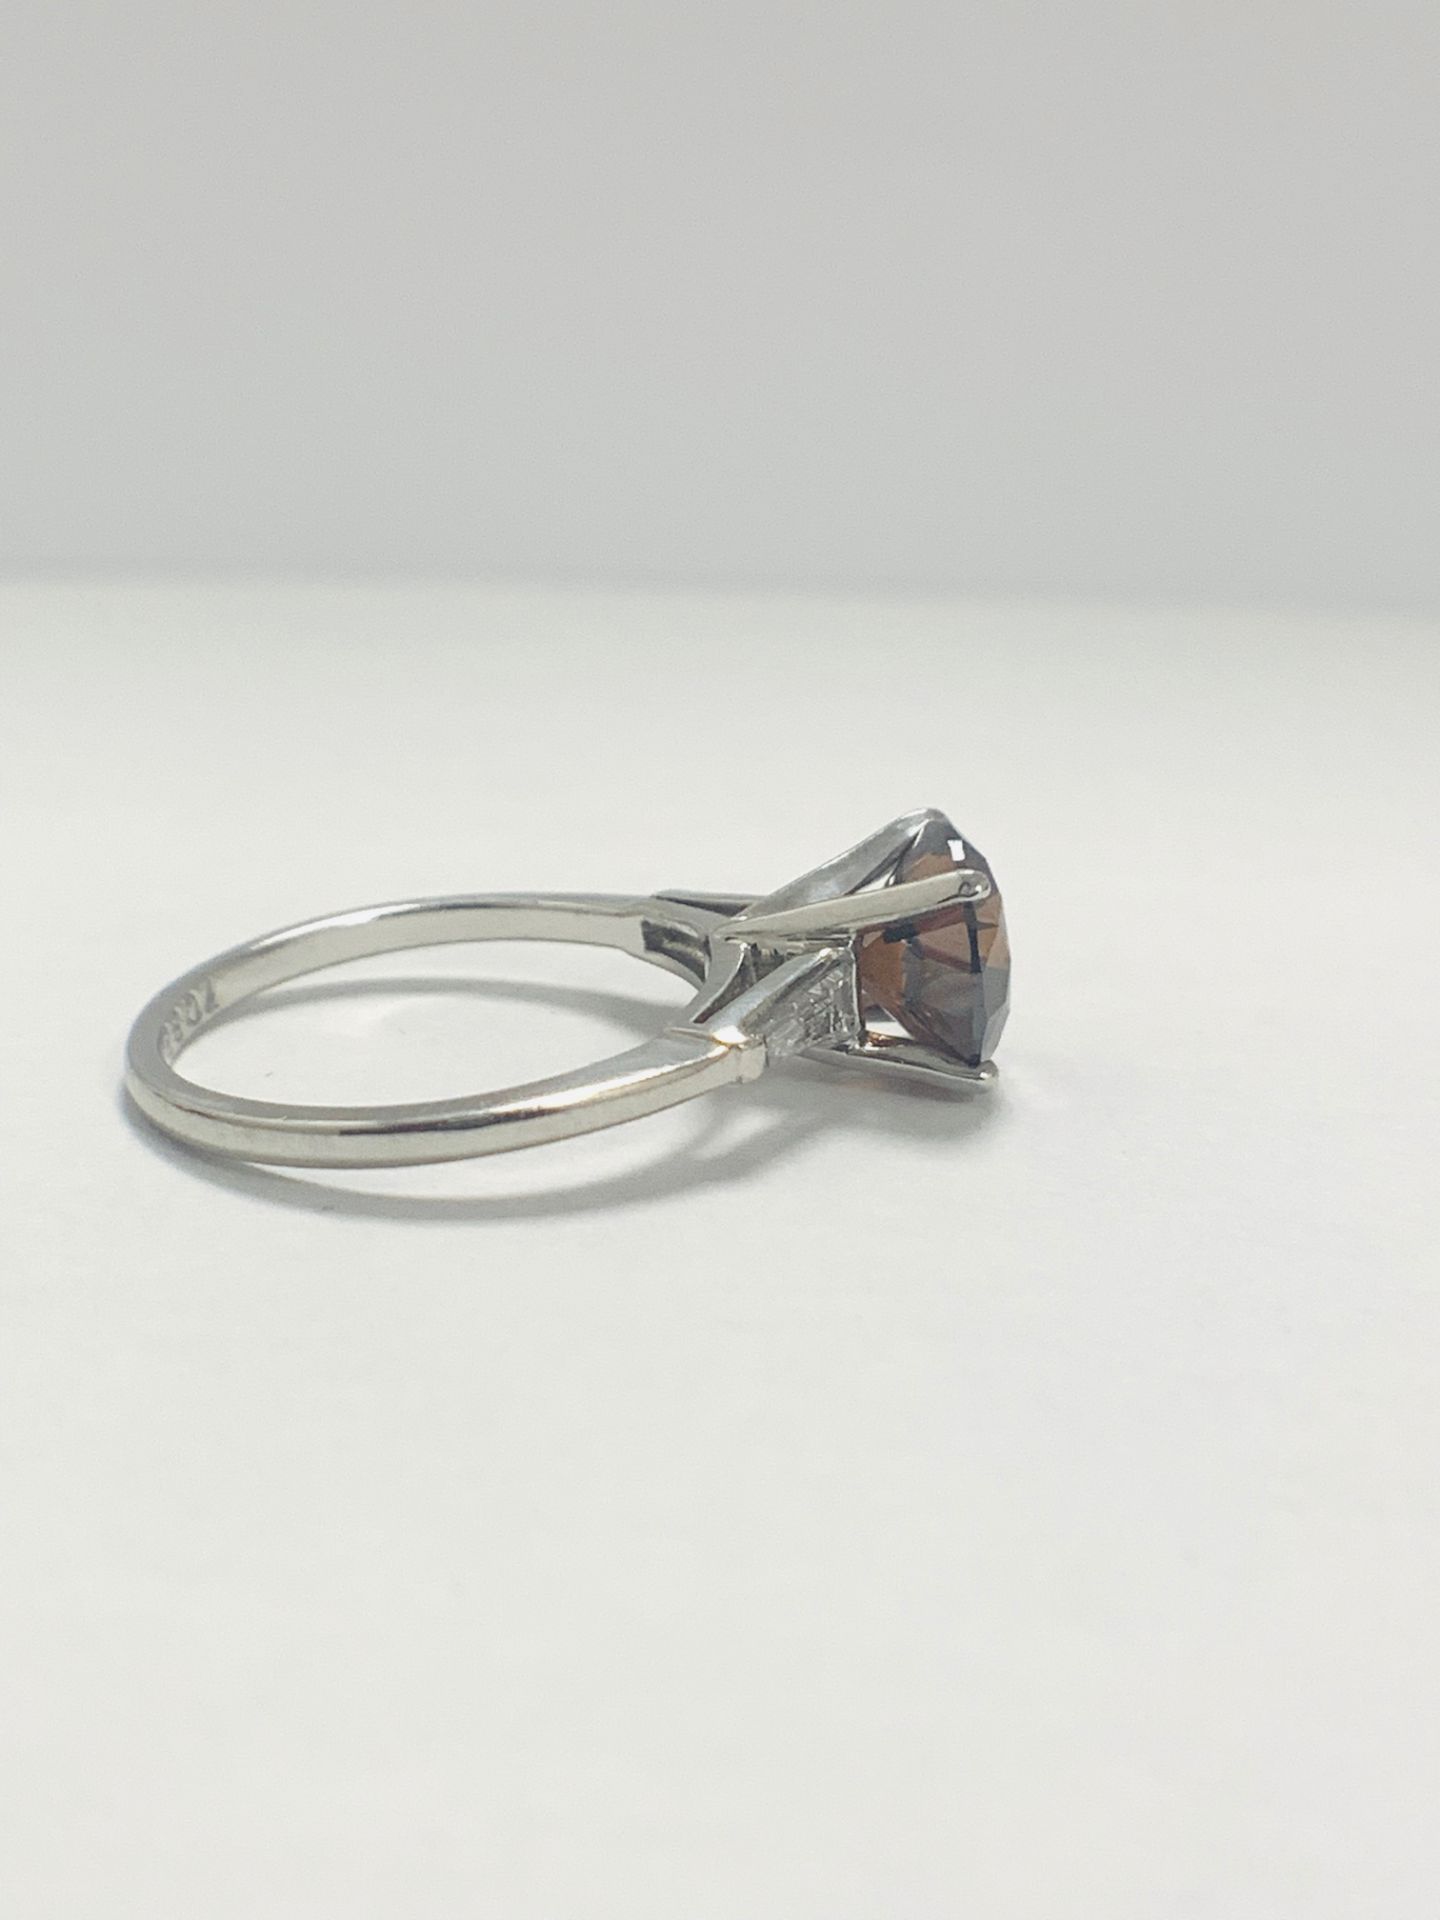 Platinum Diamond Ring Featuring Centre, Round Brilliant Cut, Deep Orangey Brown Diamond (2.15ct) - Image 8 of 14